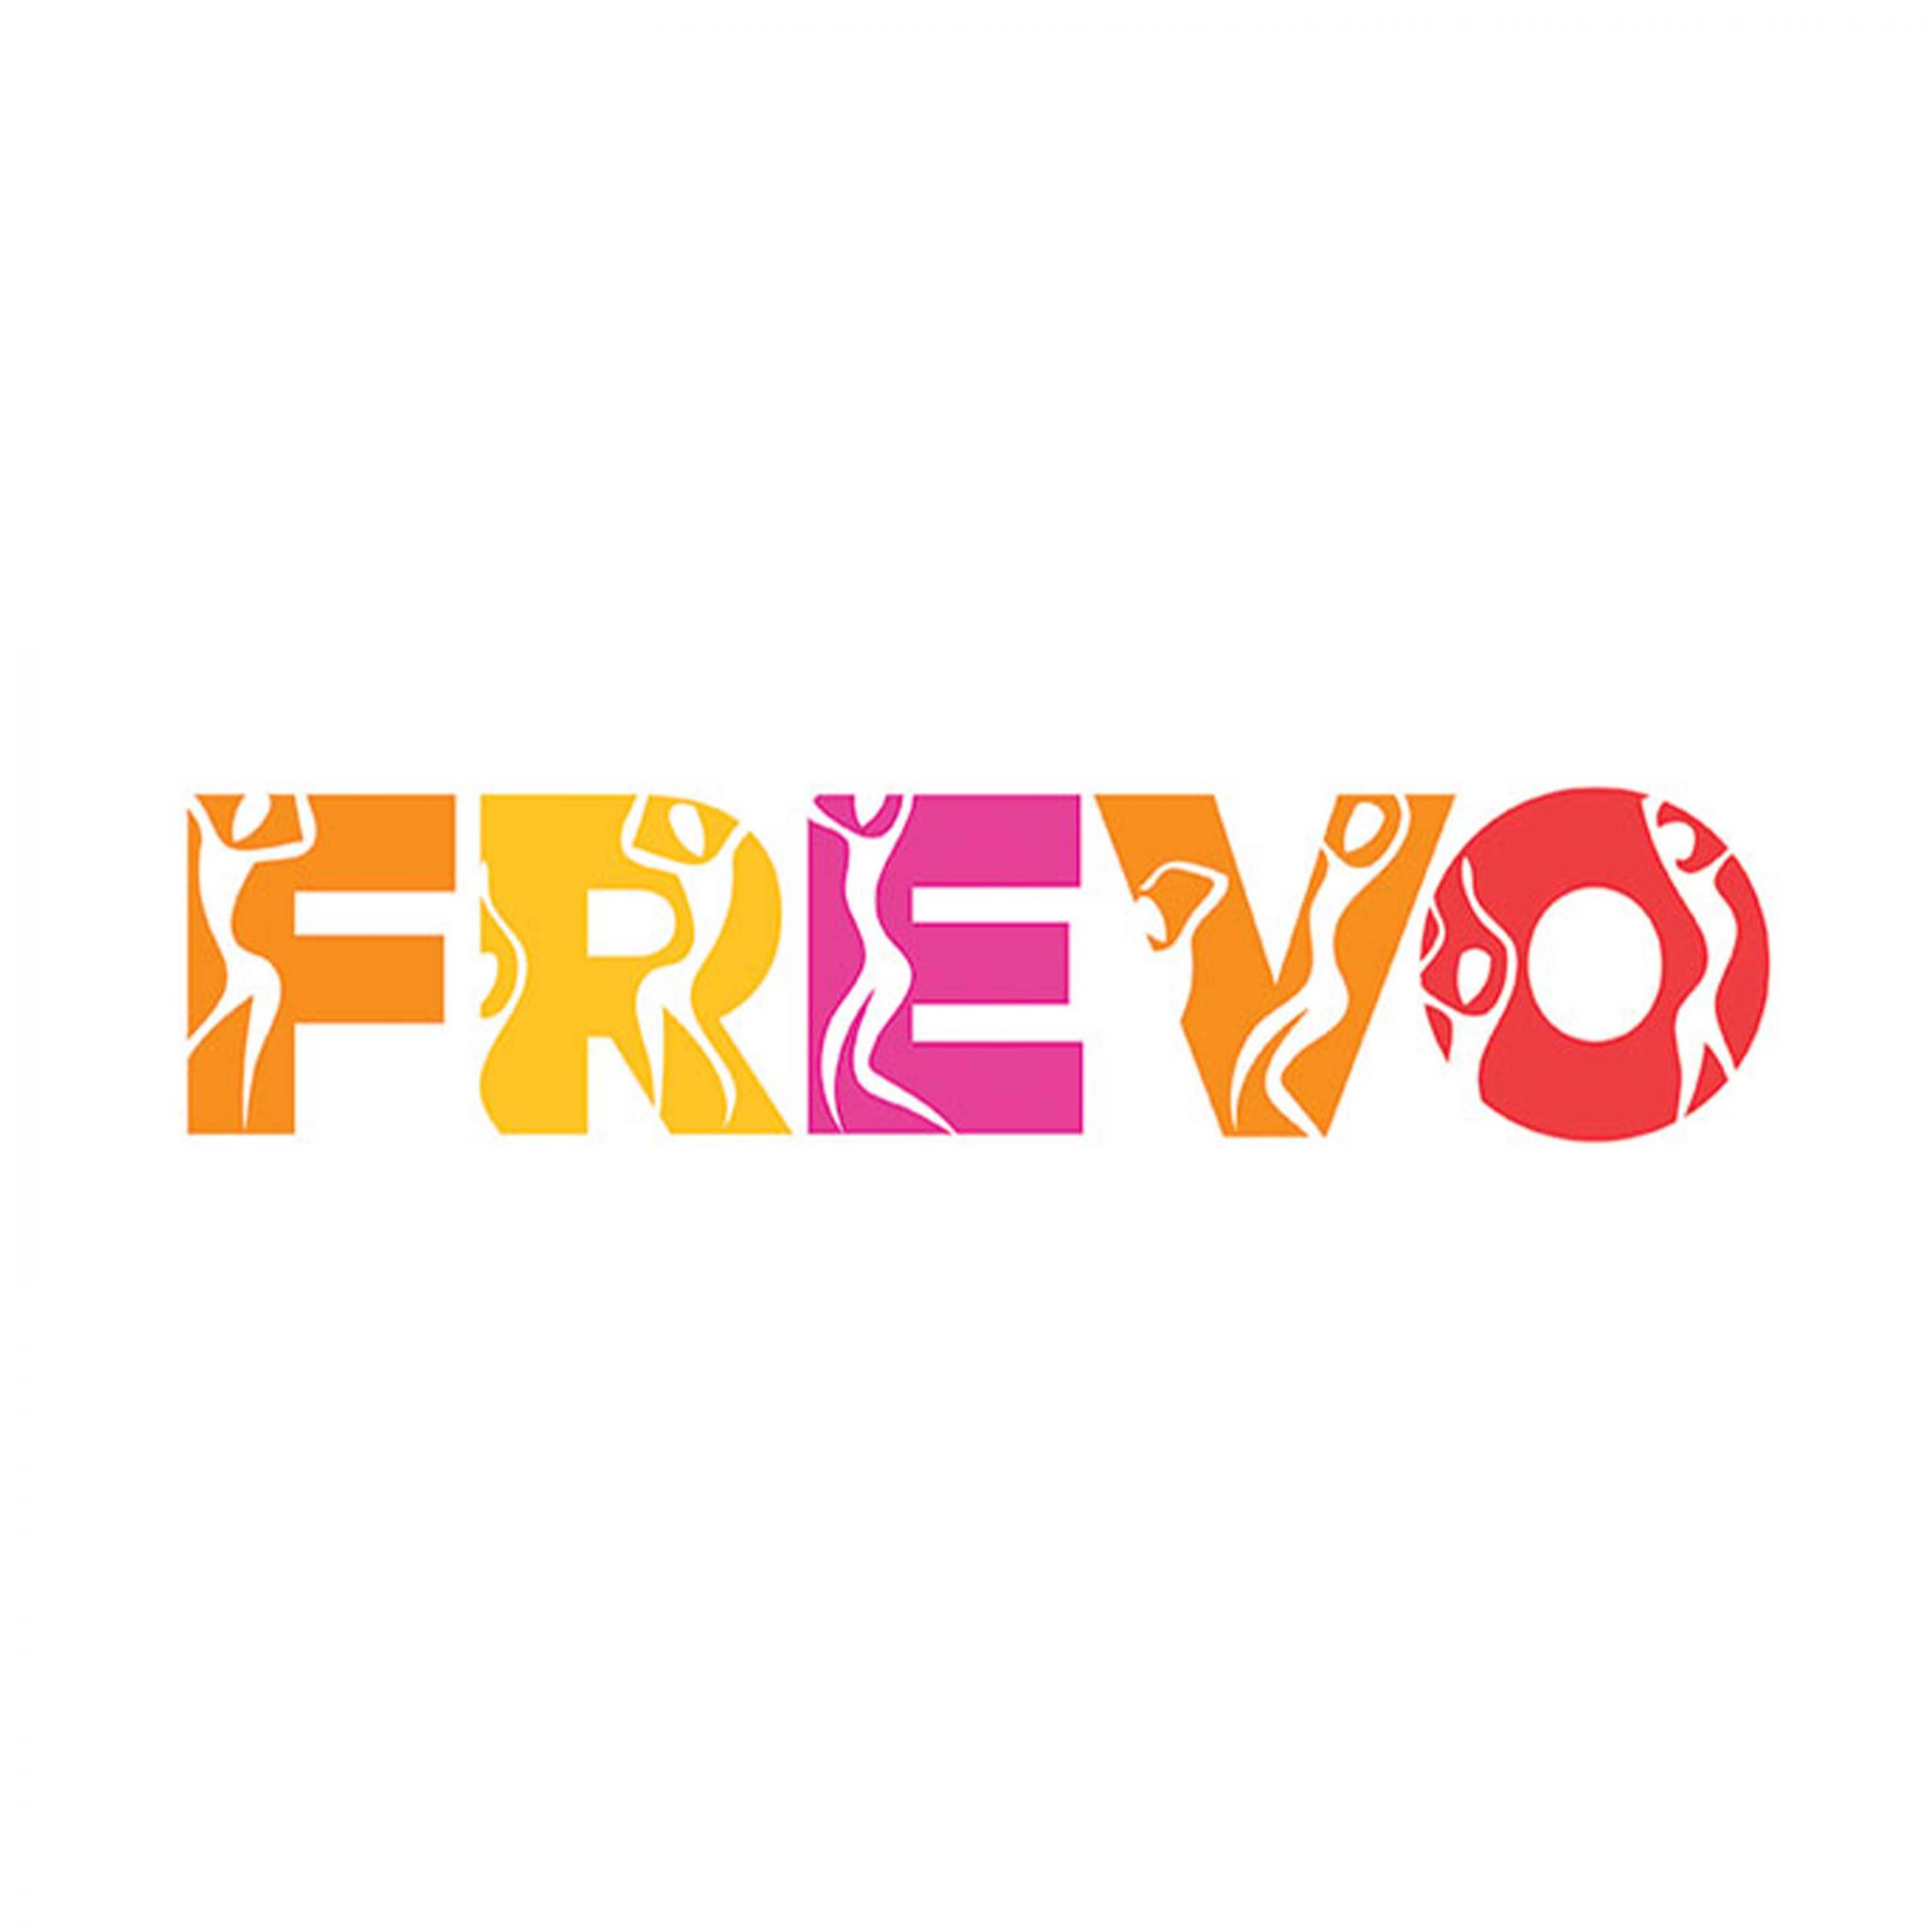 Frevo - Coming Soon in UAE